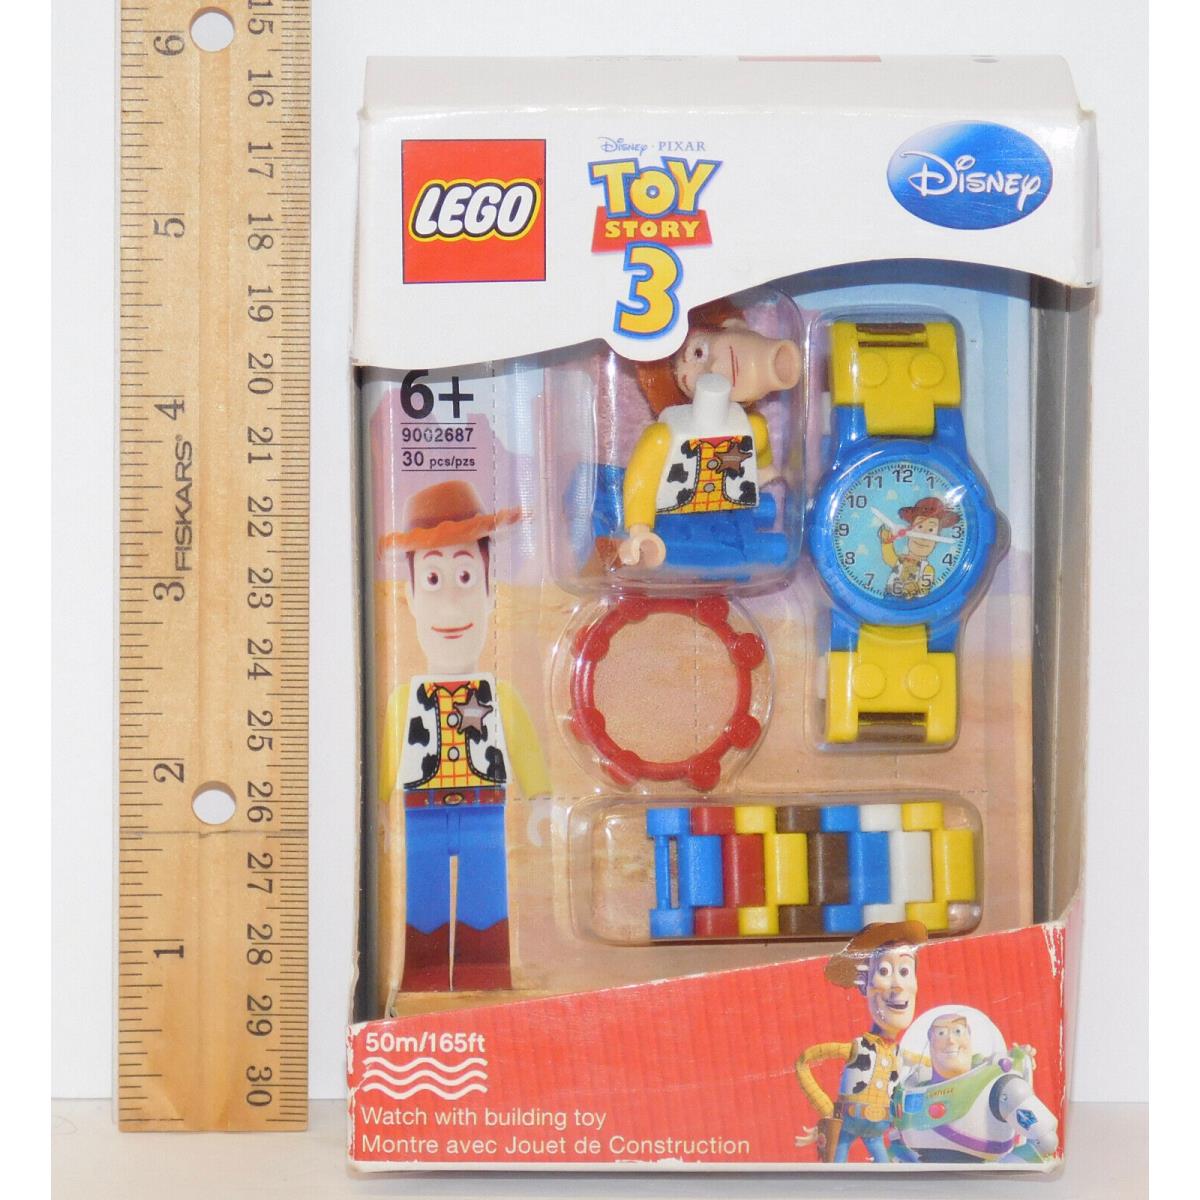 Toy Story 3 Lego Woody Wrist Watch Minifigure Disney 9002687 Age 6+